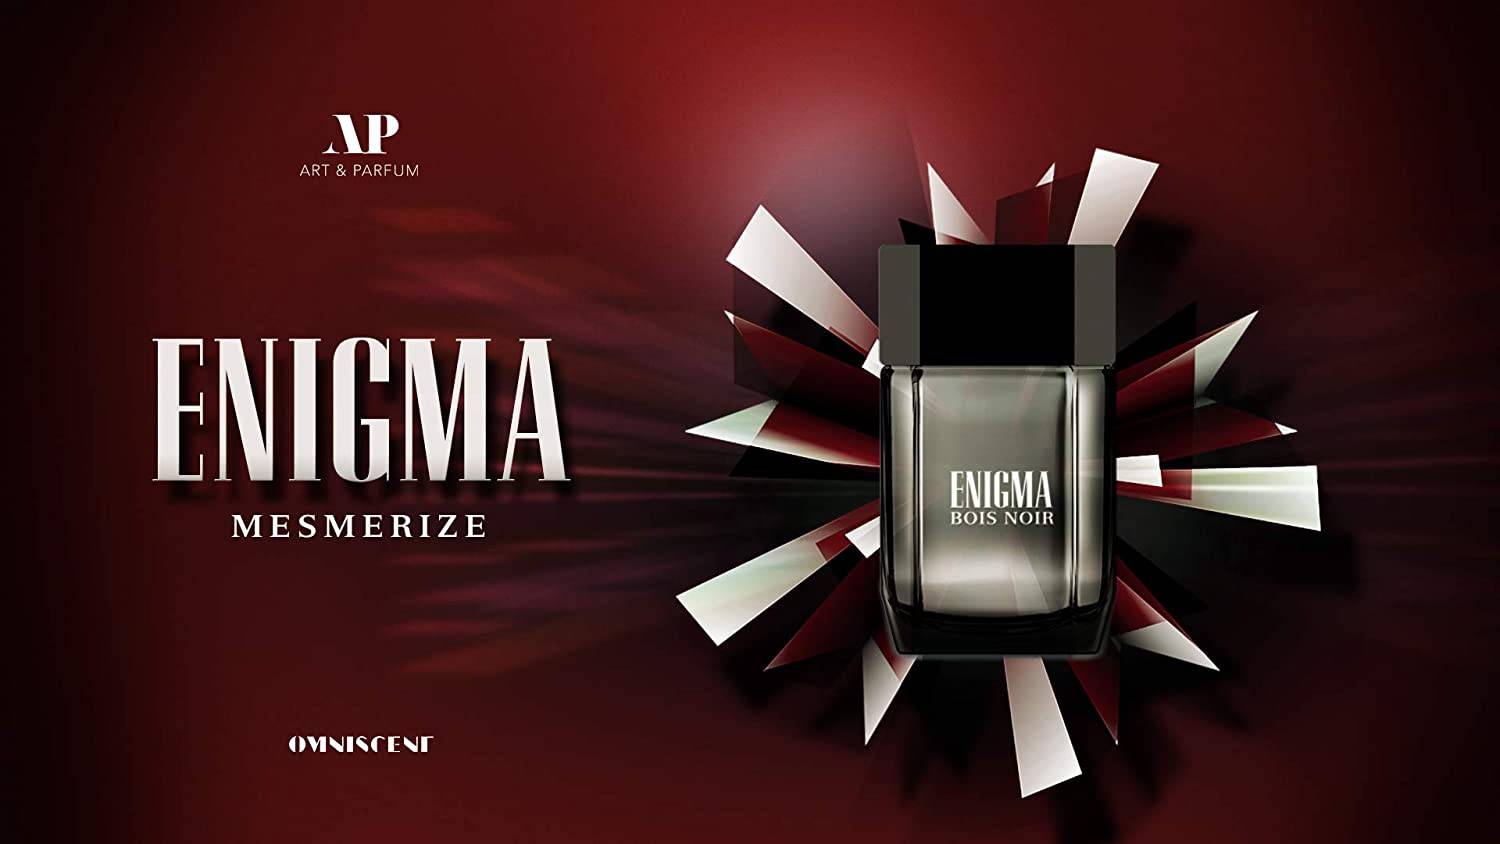 Enigma Bois Noir EDP for Men - 100 ML (3.4 oz) by Art & Parfum | (WITH VELVET POUCH) - Intense oud